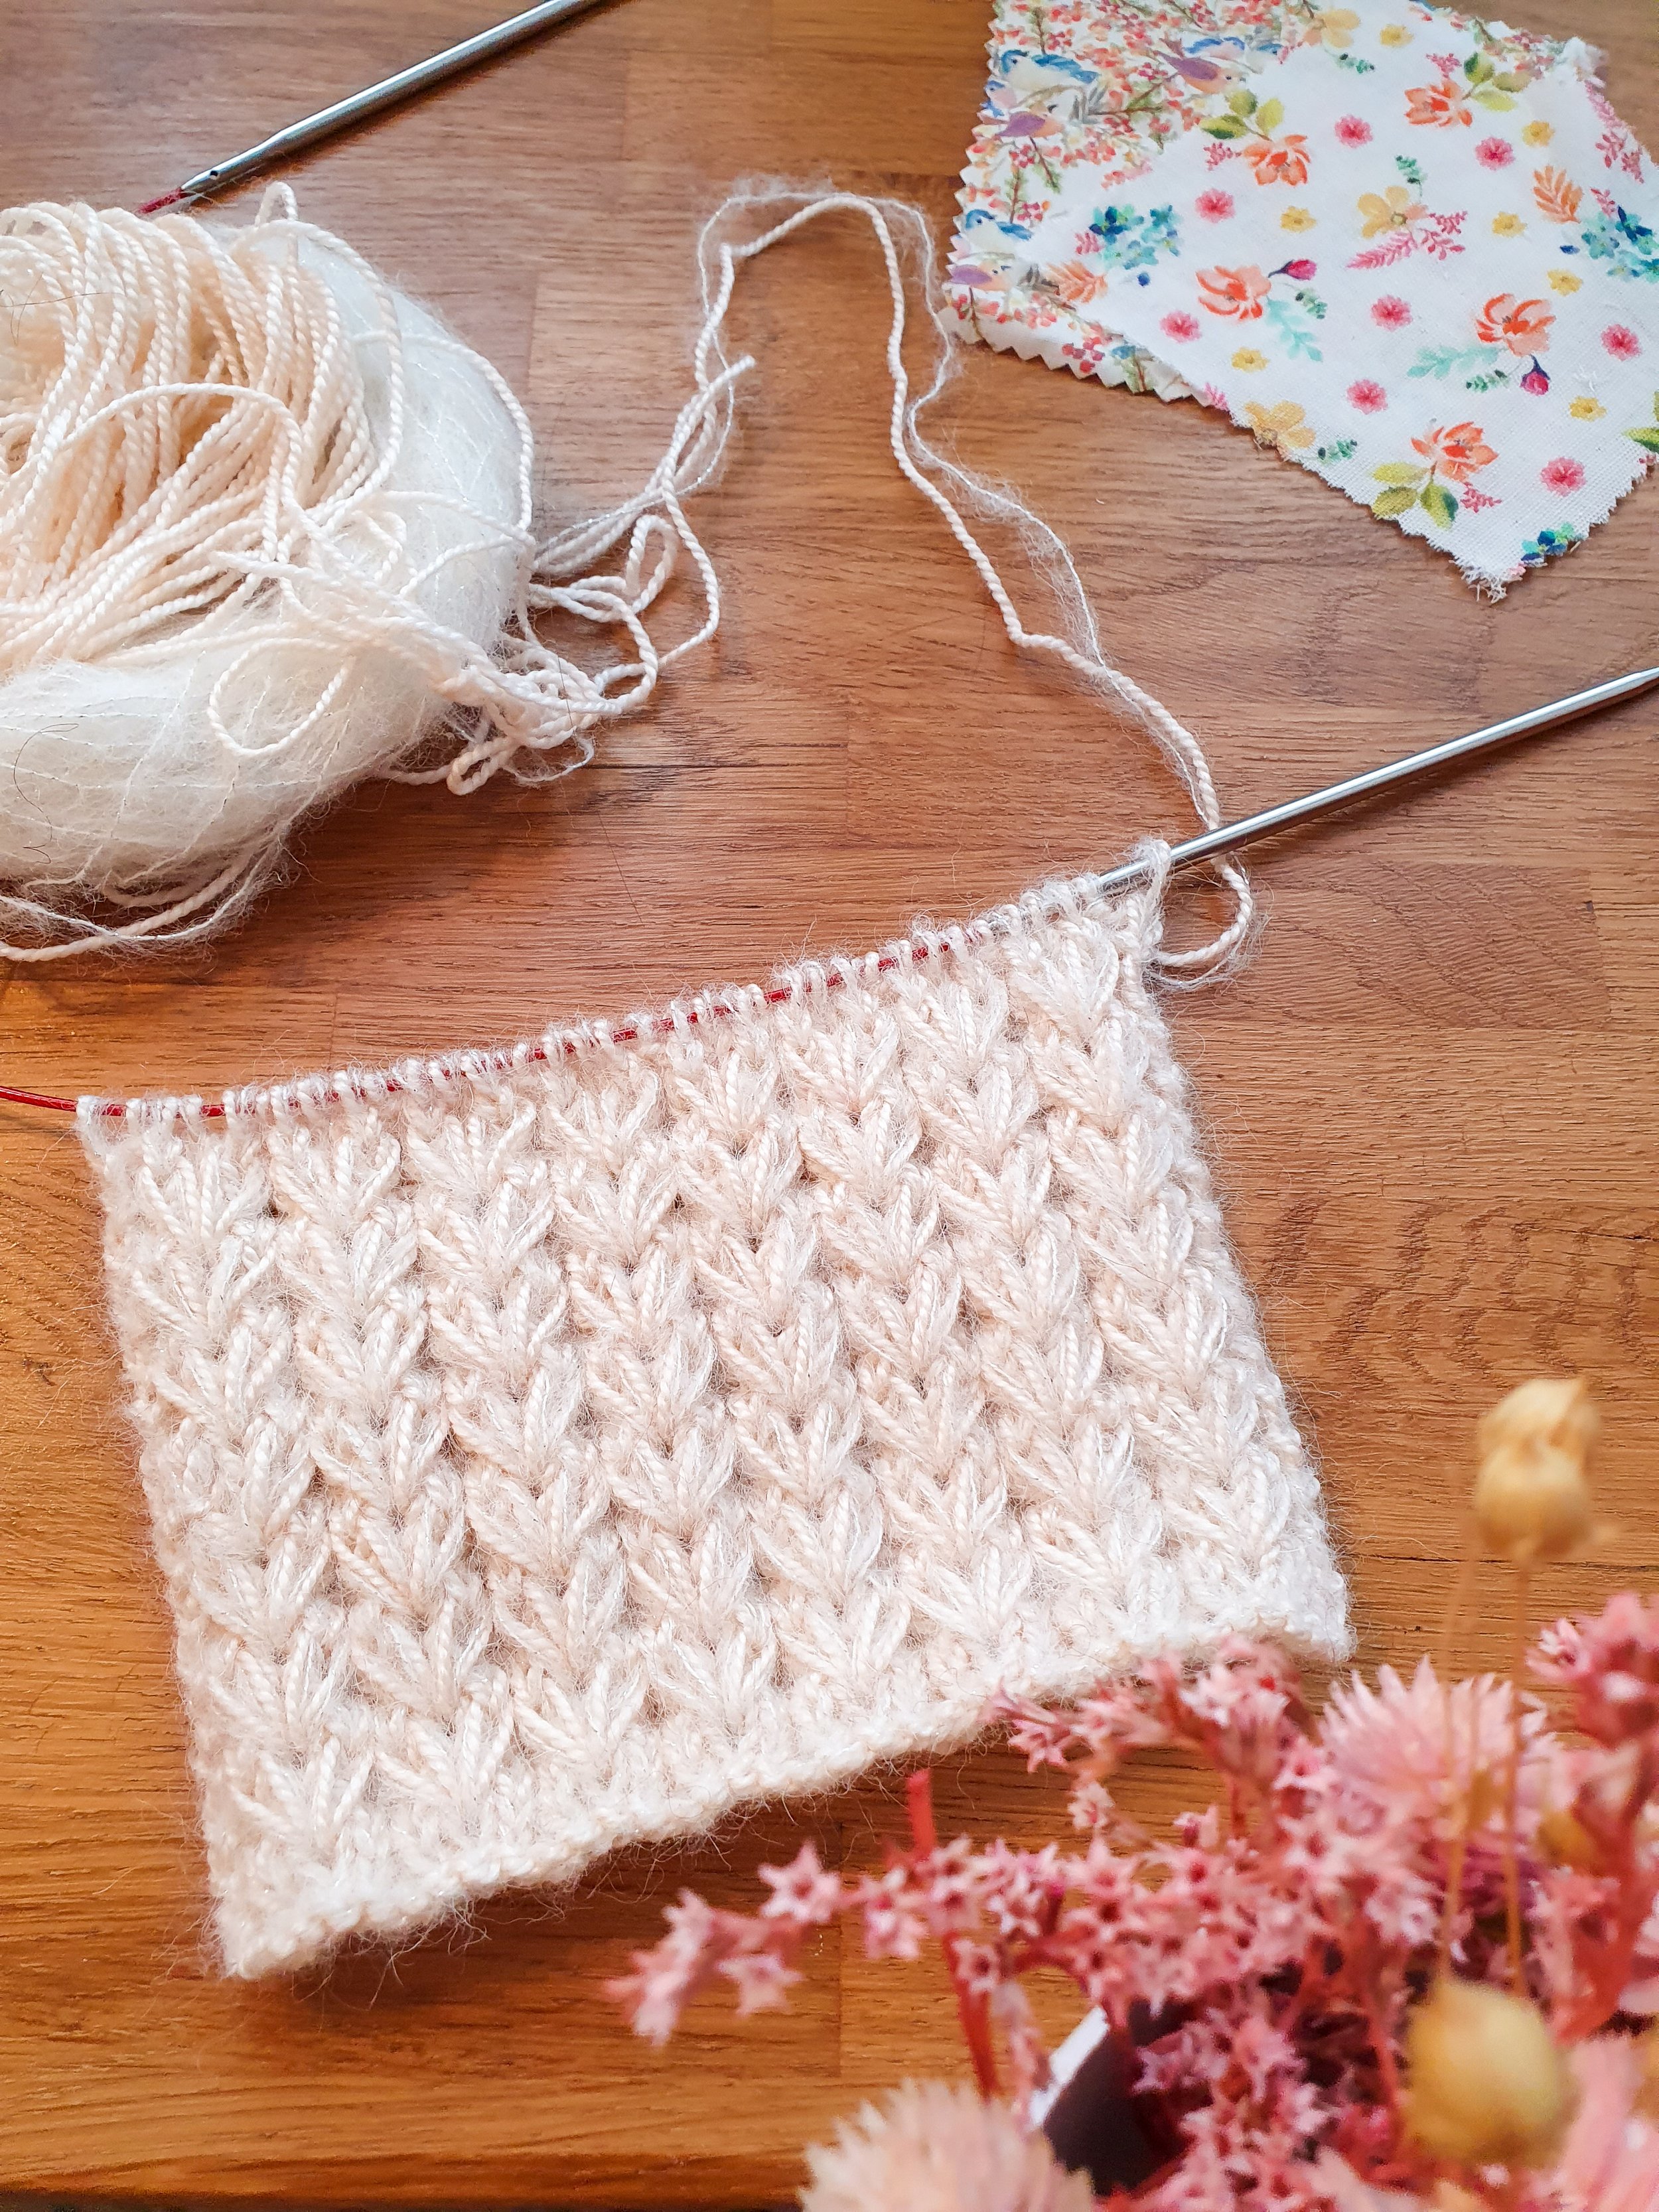 Les différents types d'aiguilles à tricoter